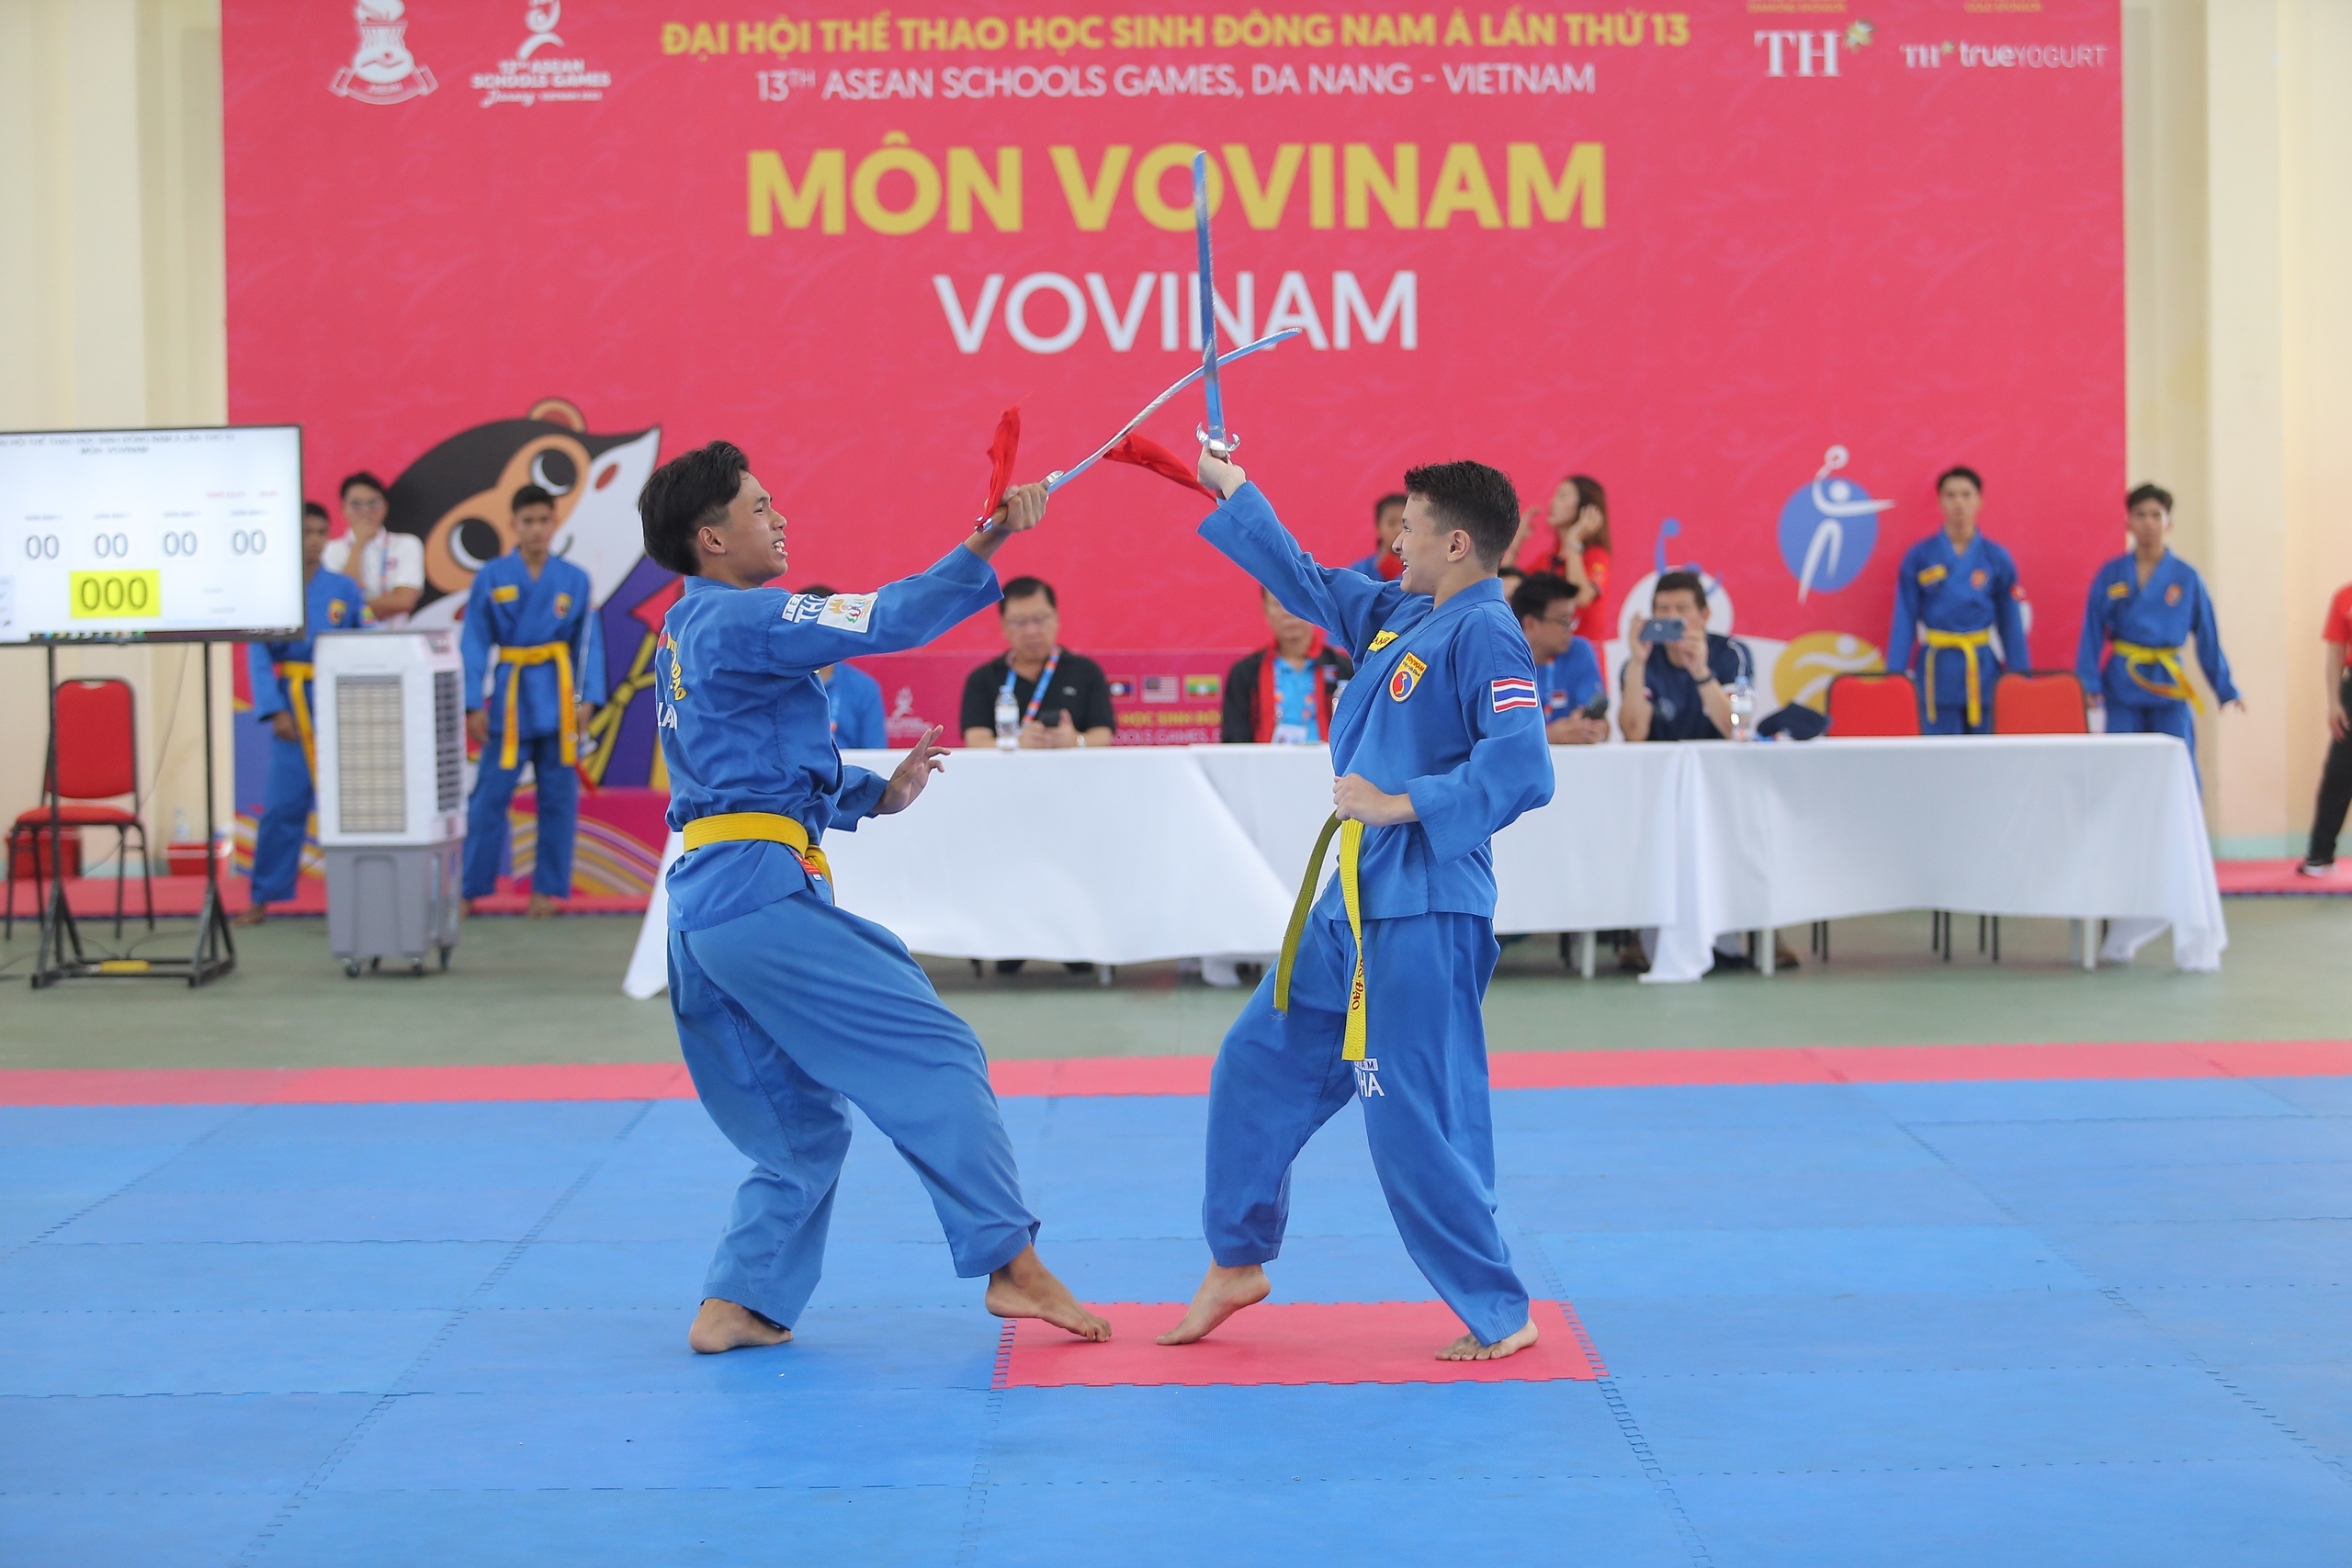 Vovinam - môn võ Việt đi vào học đường khu vực Đông Nam Á- Ảnh 2.